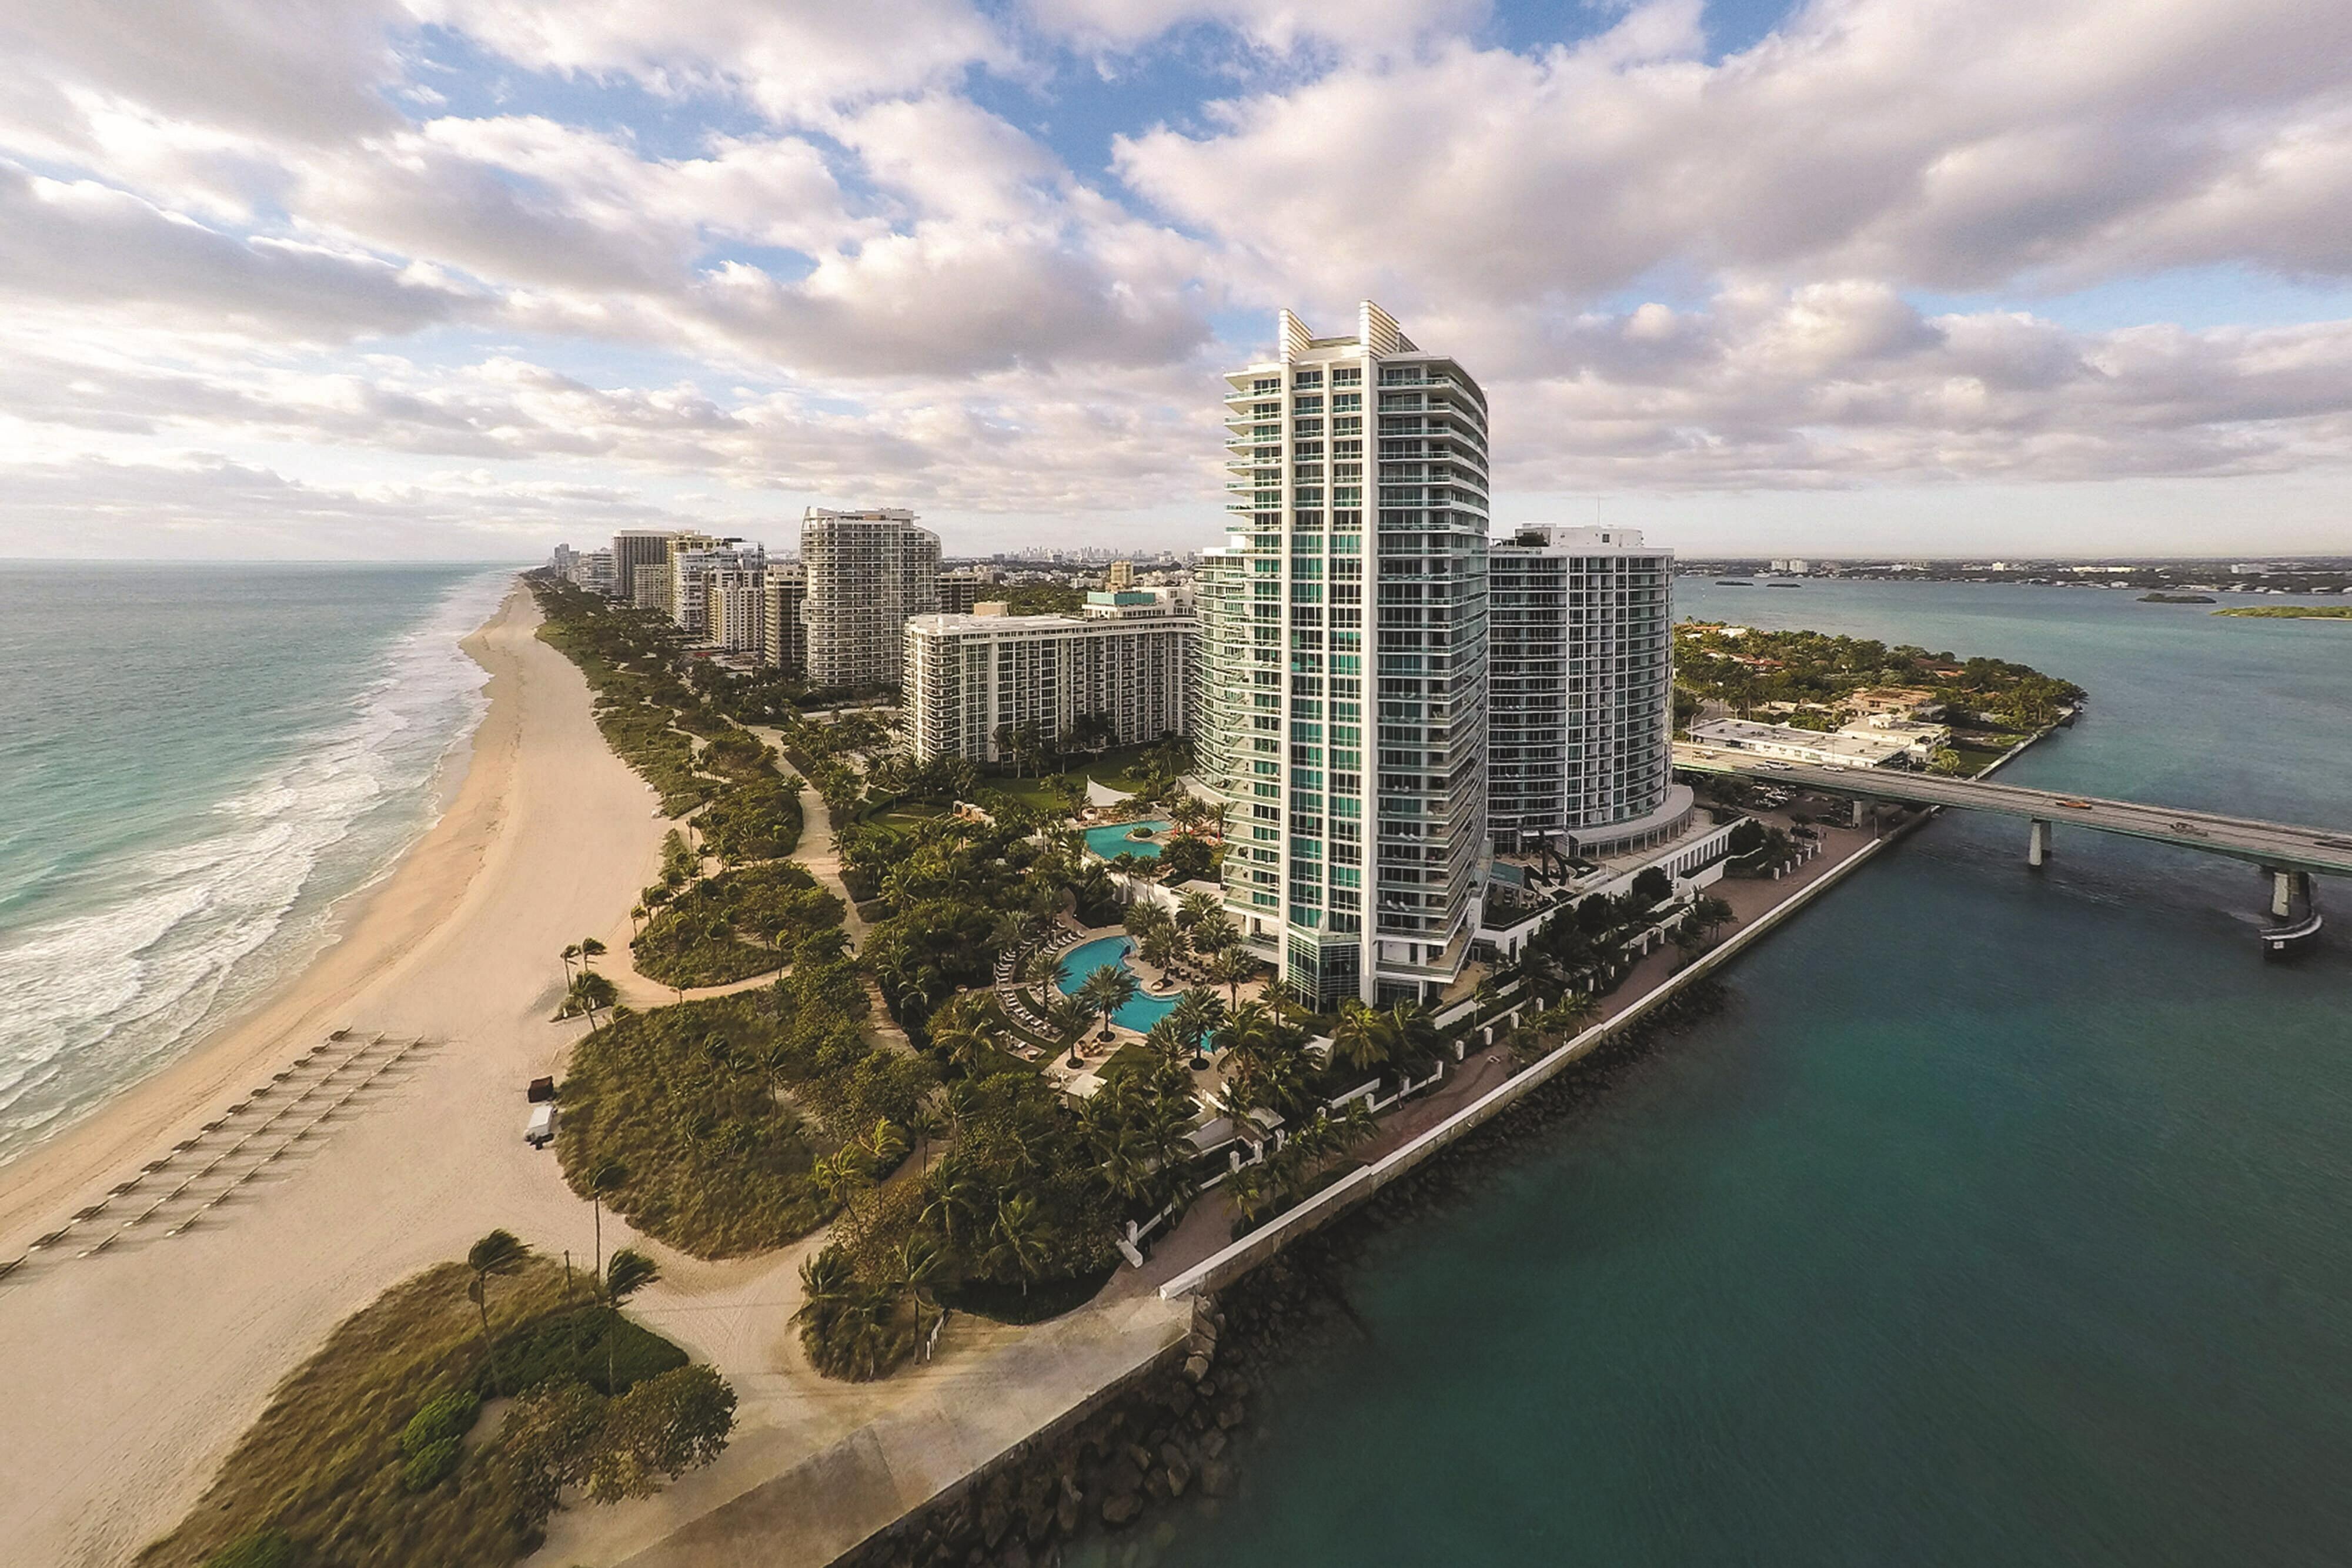 Photo of The Ritz-Carlton Bal Harbour, Miami, Miami Beach, FL